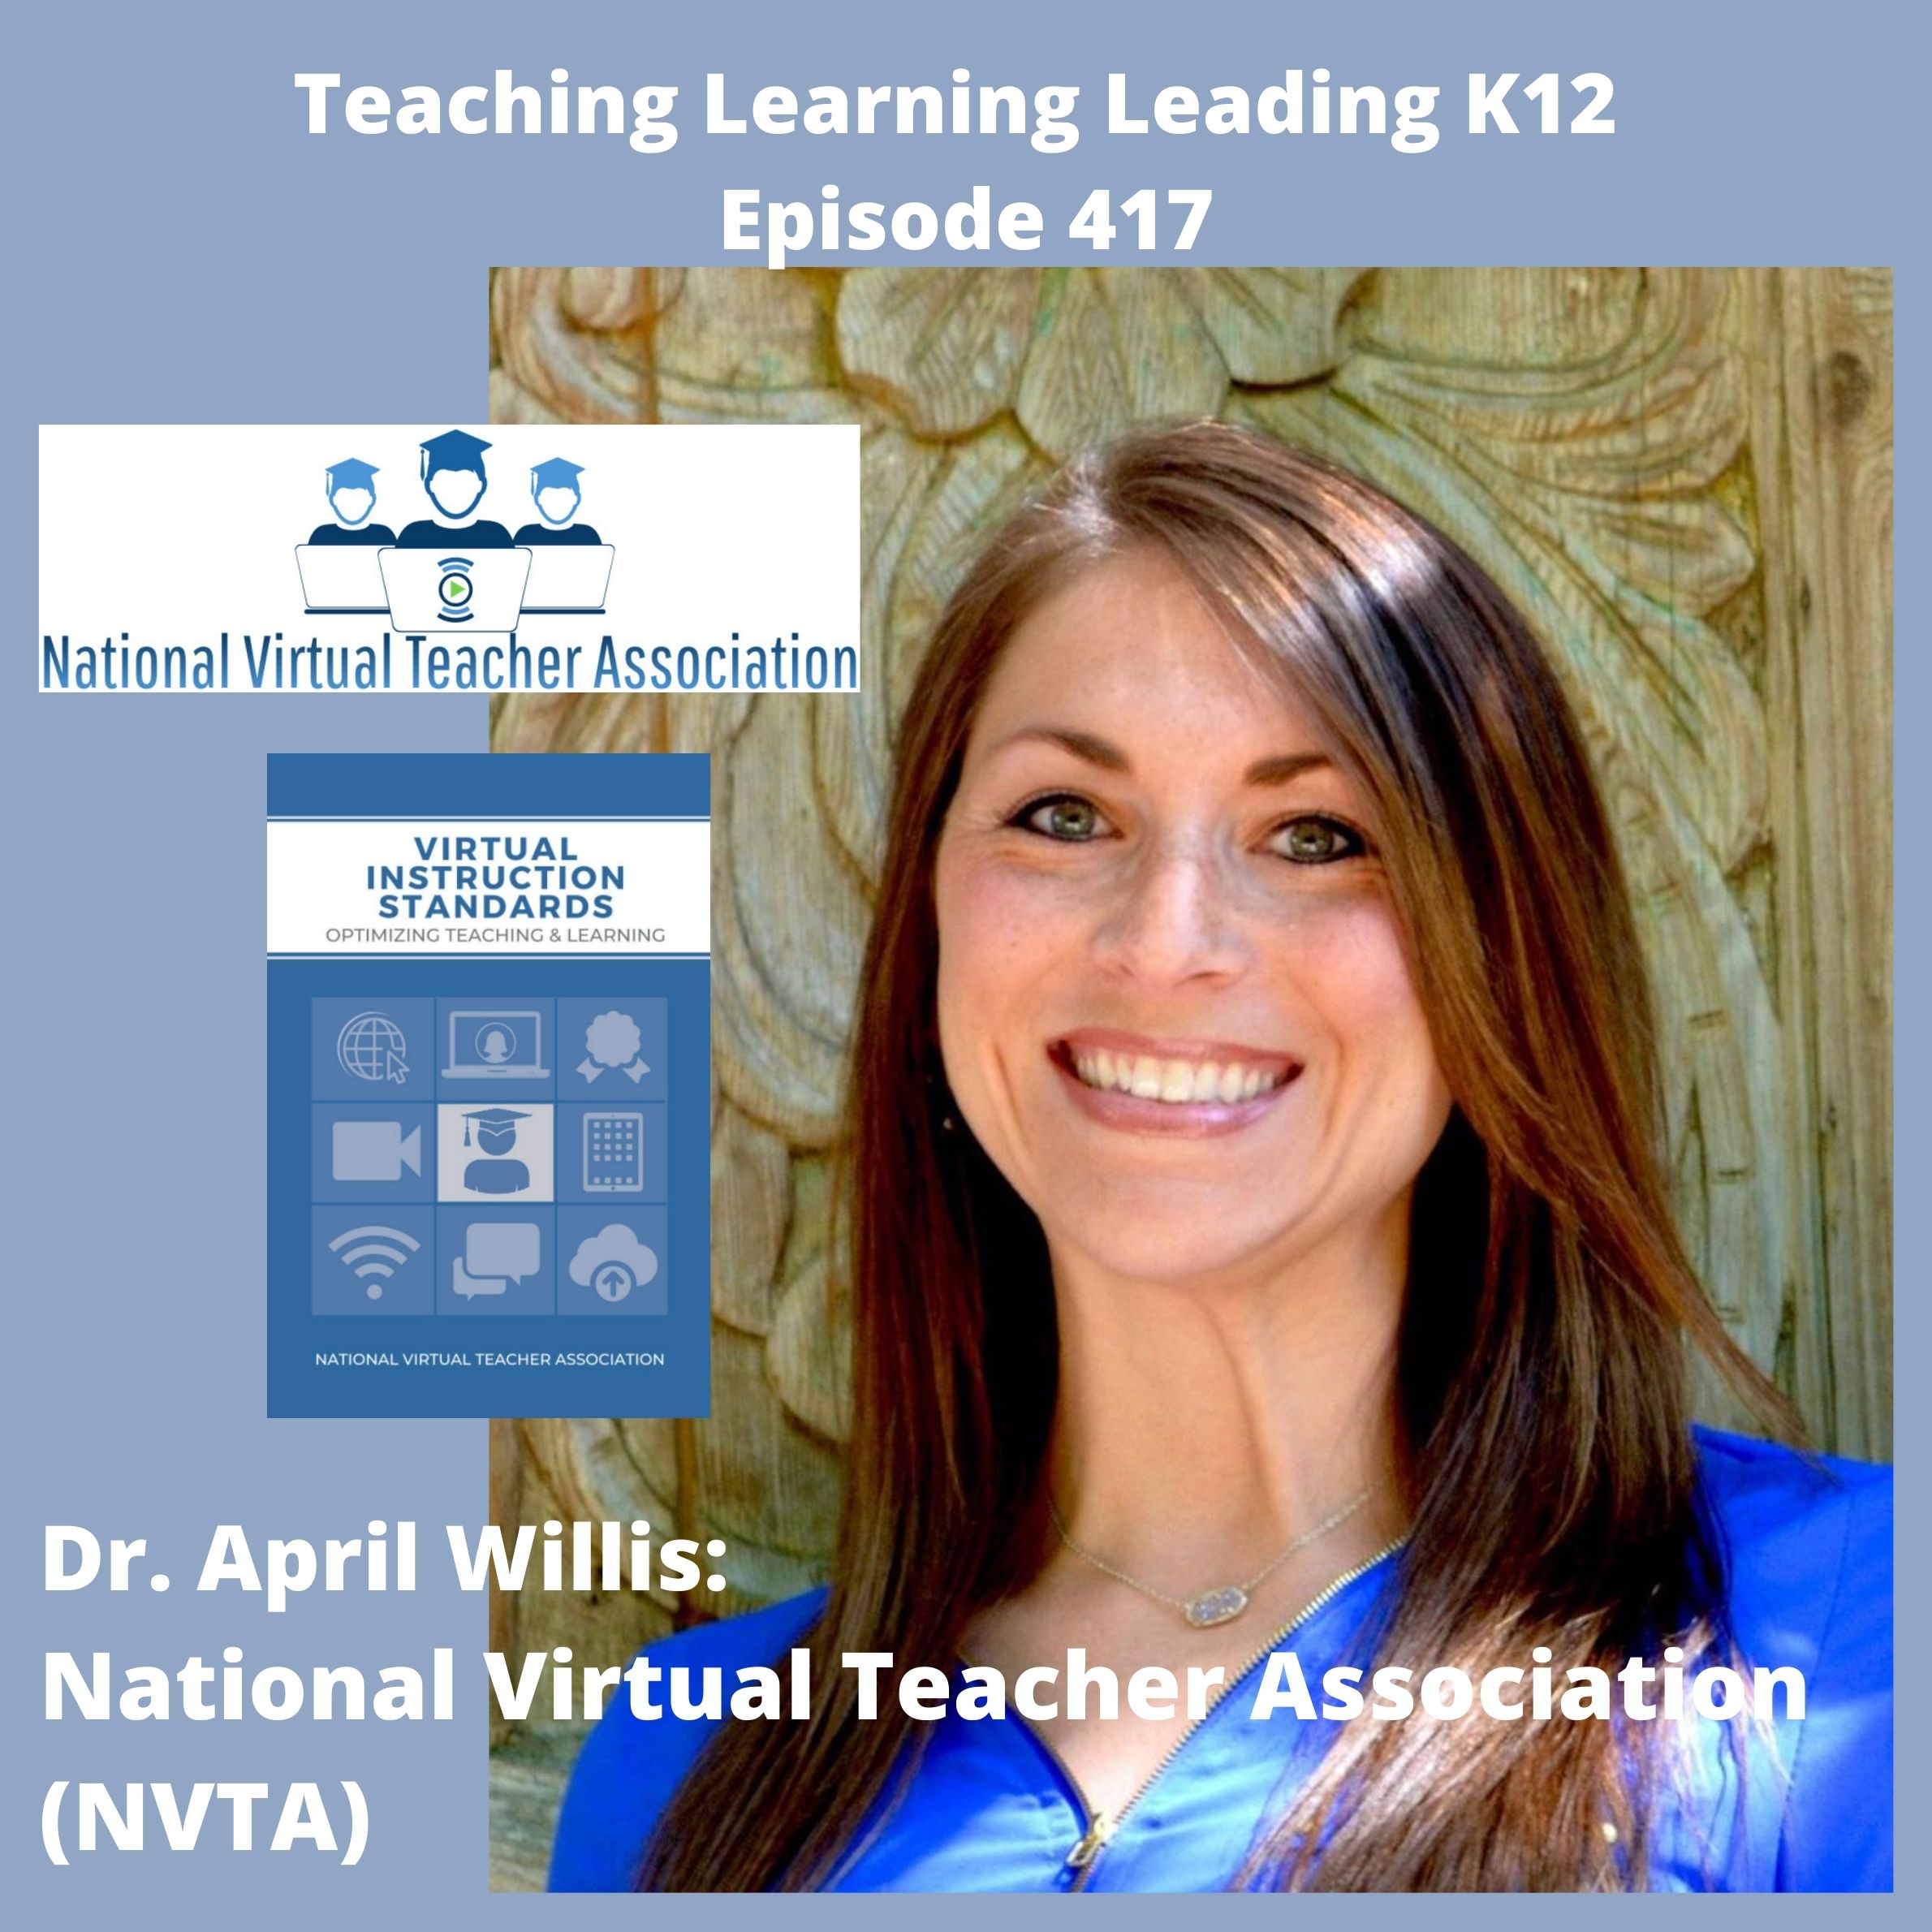 Dr. April Willis: The National Virtual Teacher Association (NVTA) - 417 Image